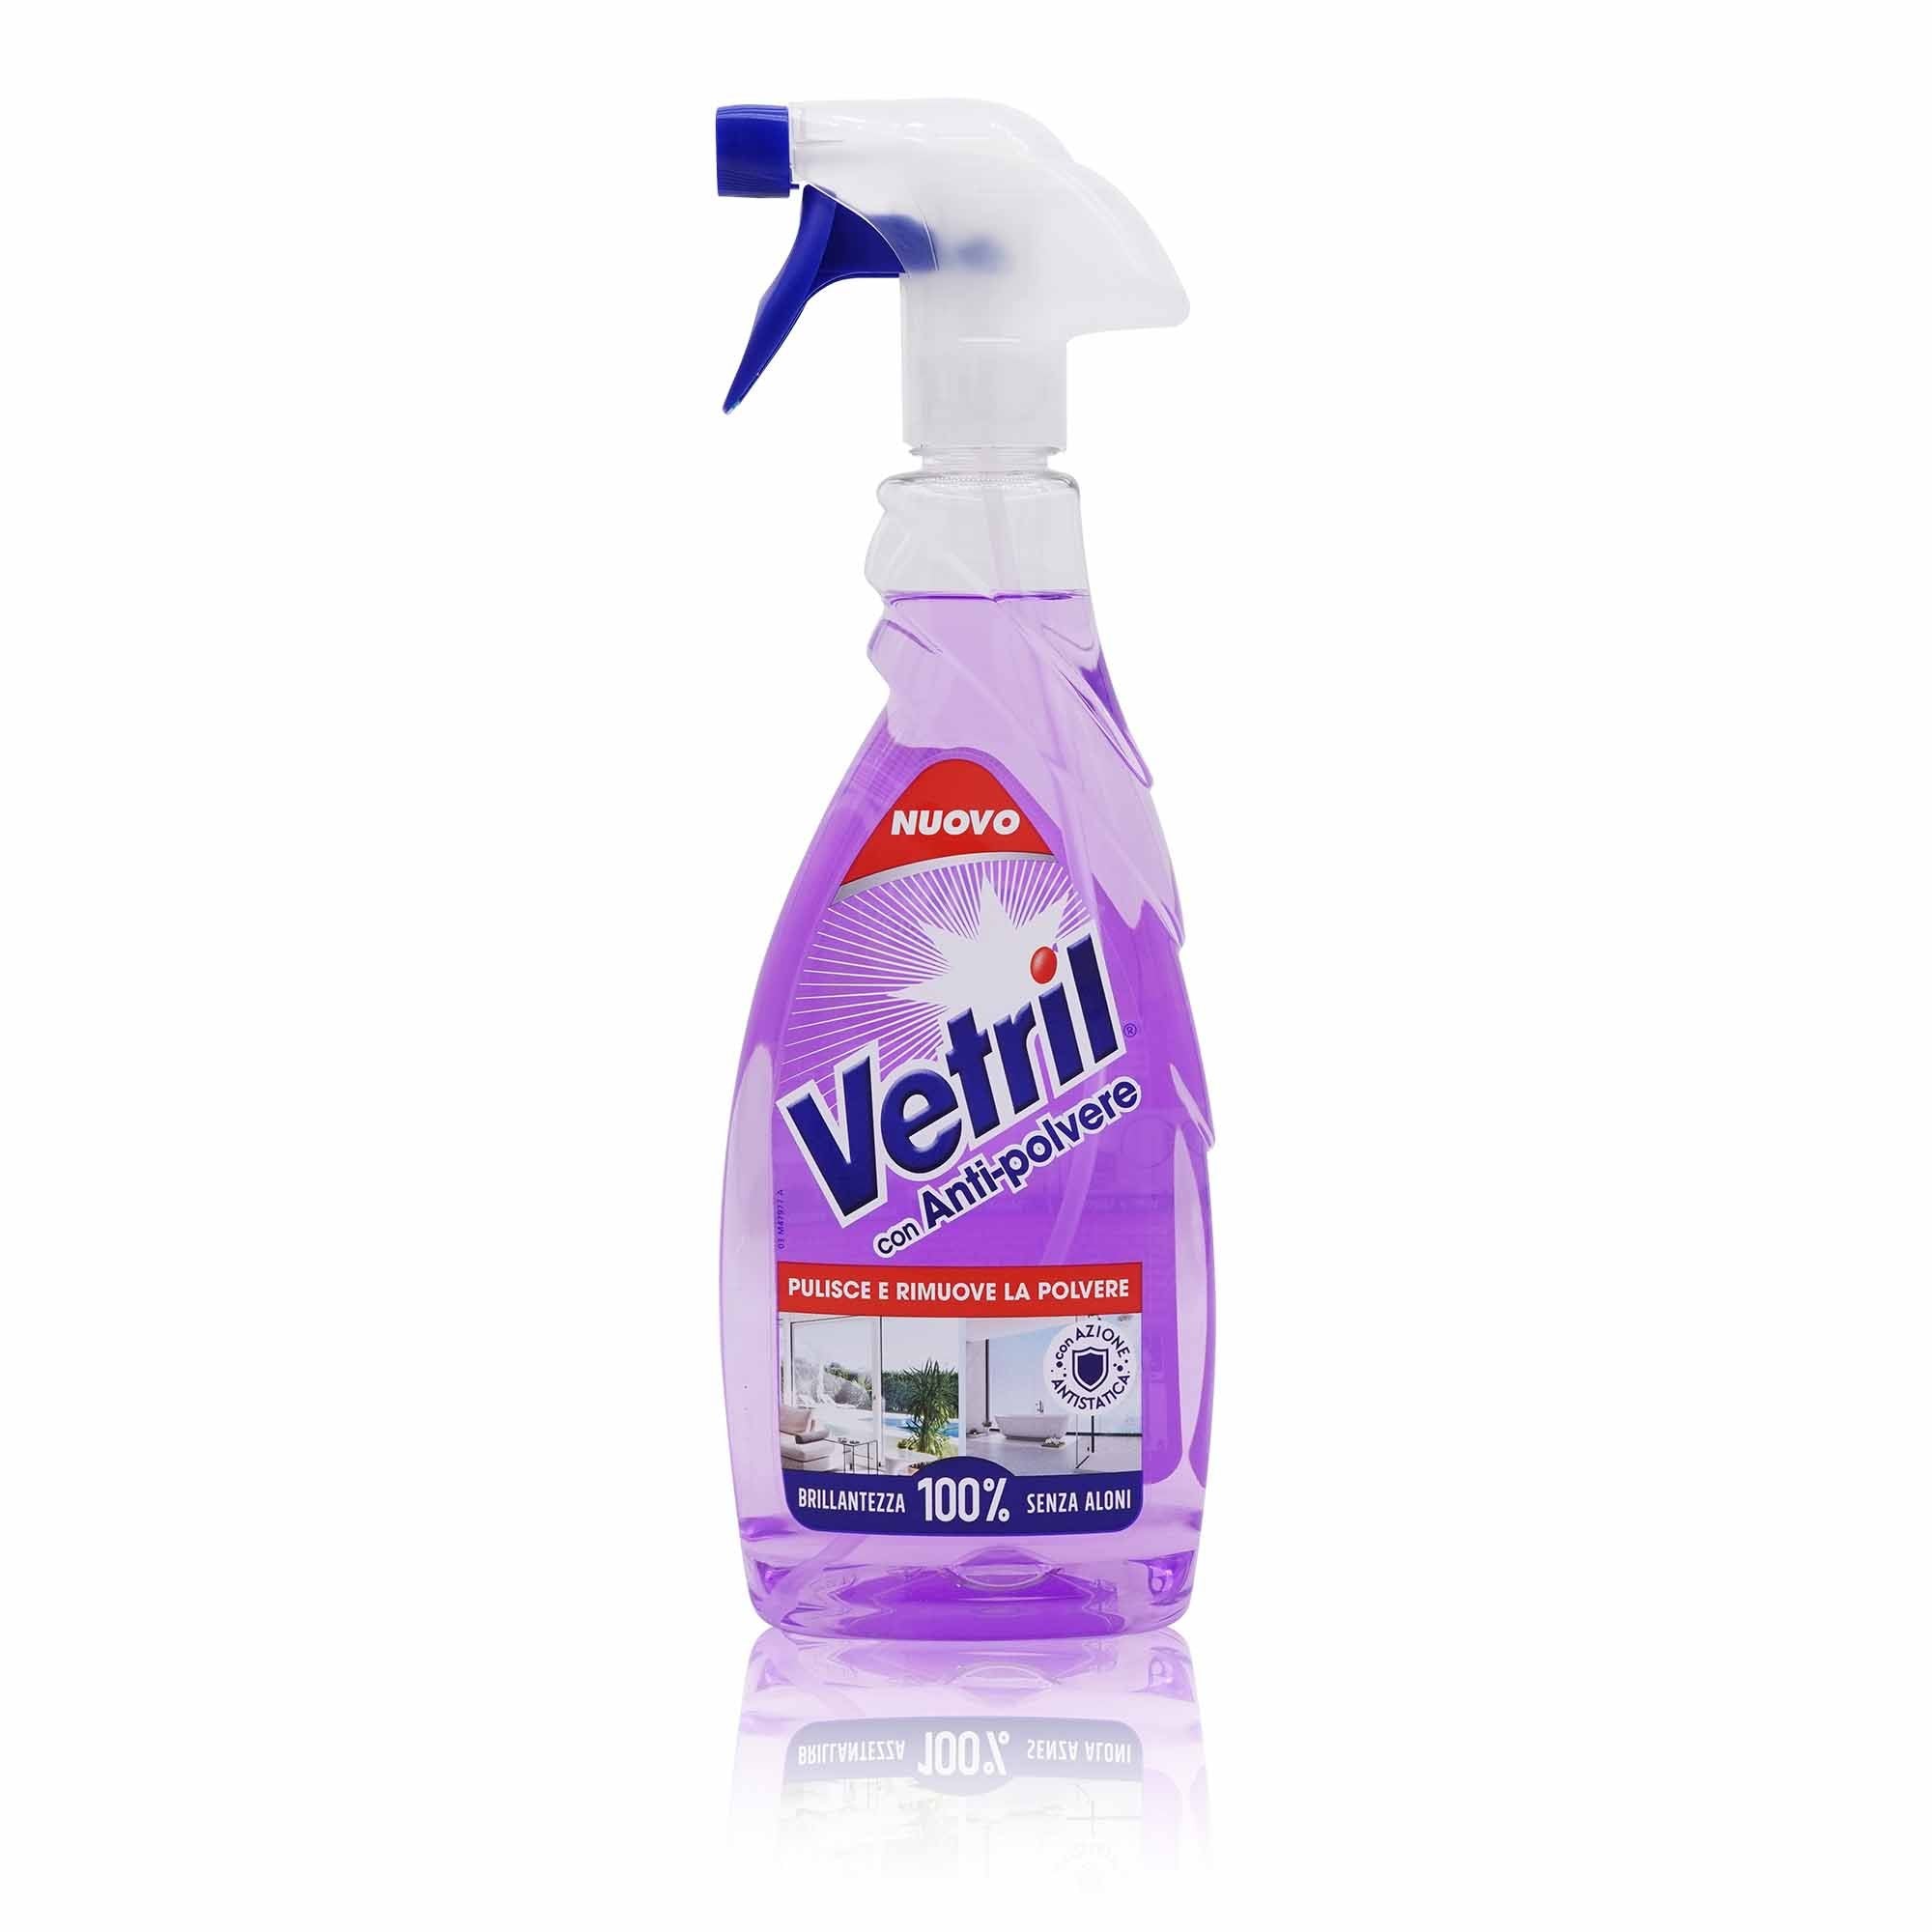 VETRIL Vetril Anti-polvere – Anti-Staub Reinigungsspray - 0,65l - italienisch-einkaufen.de